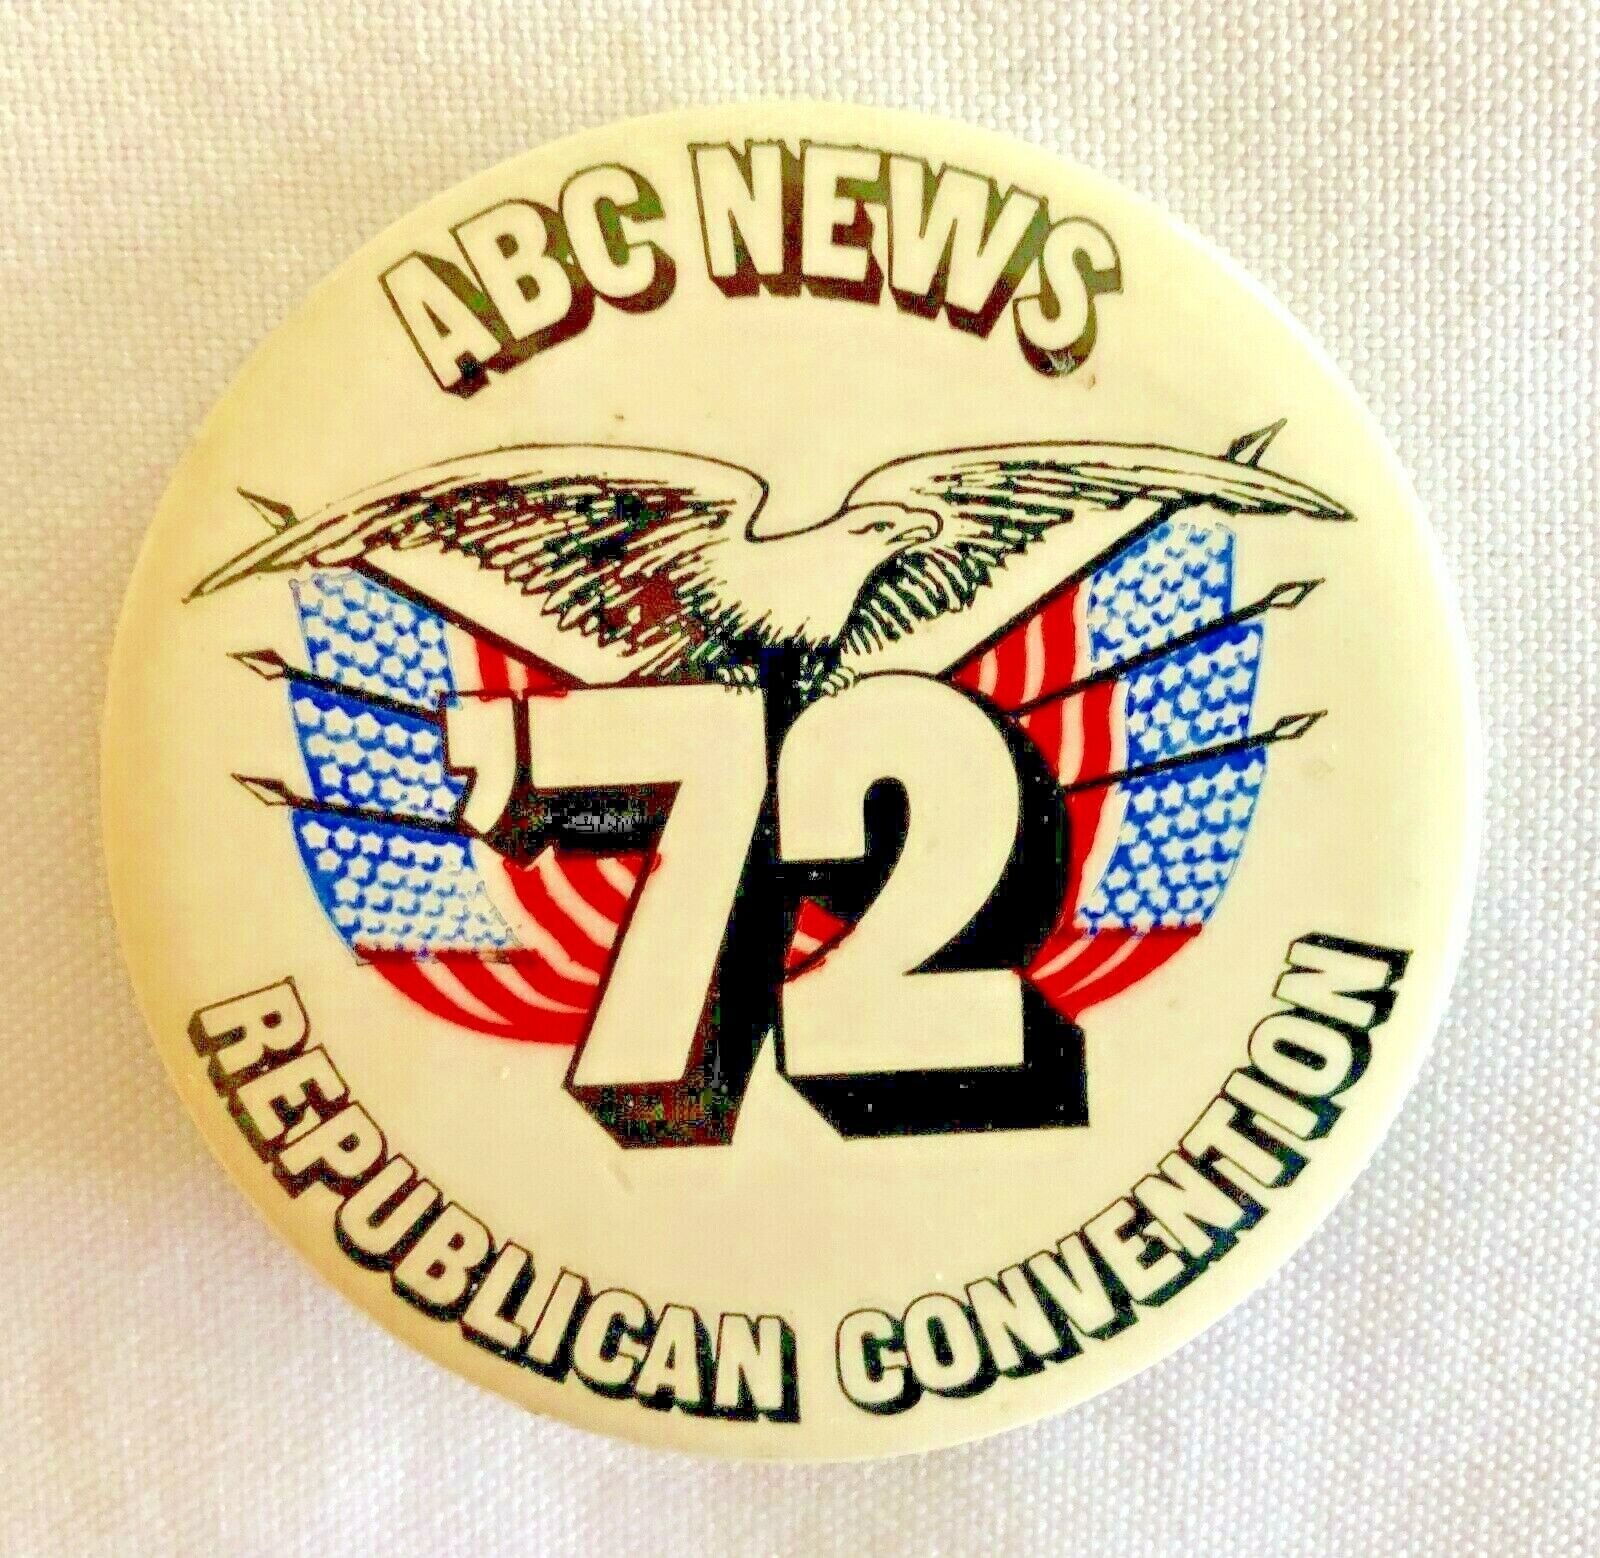 NIXON ABC NEWS 1972 REPUBLICAN CONVENTION SCARCE BUTTON PIN - 